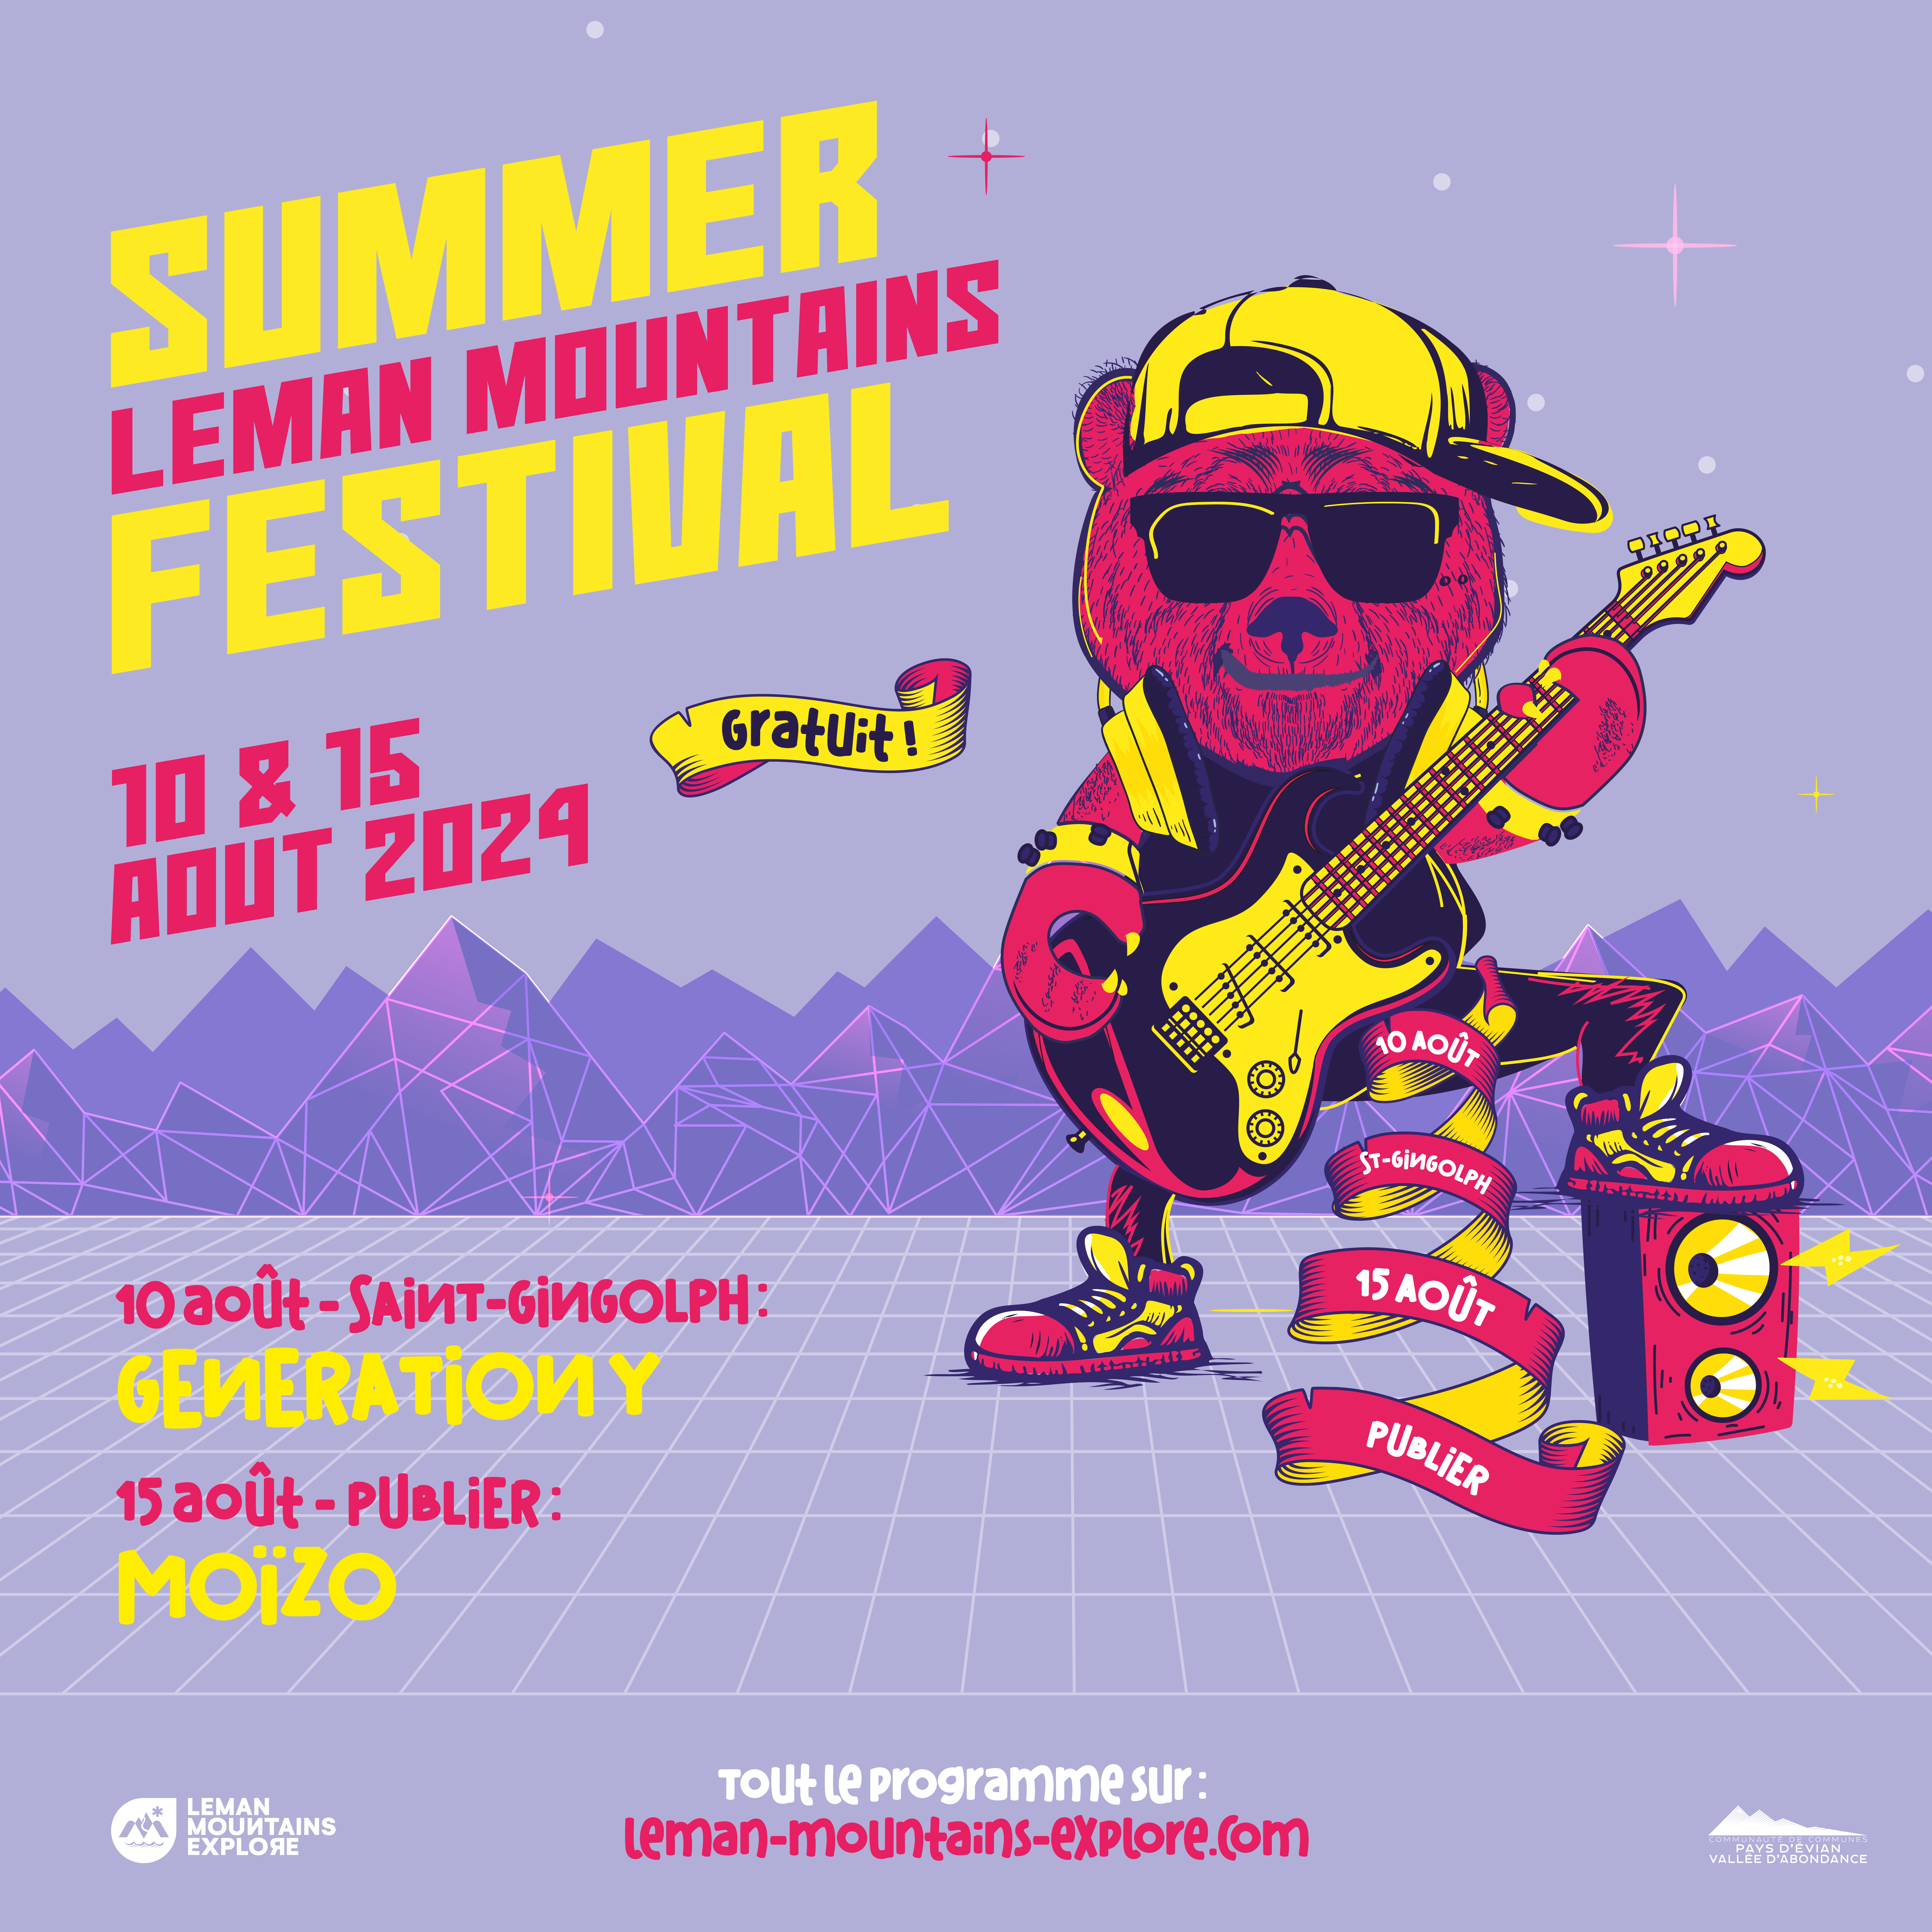 Summer Leman Mountains Festival - Saint-Gingolph